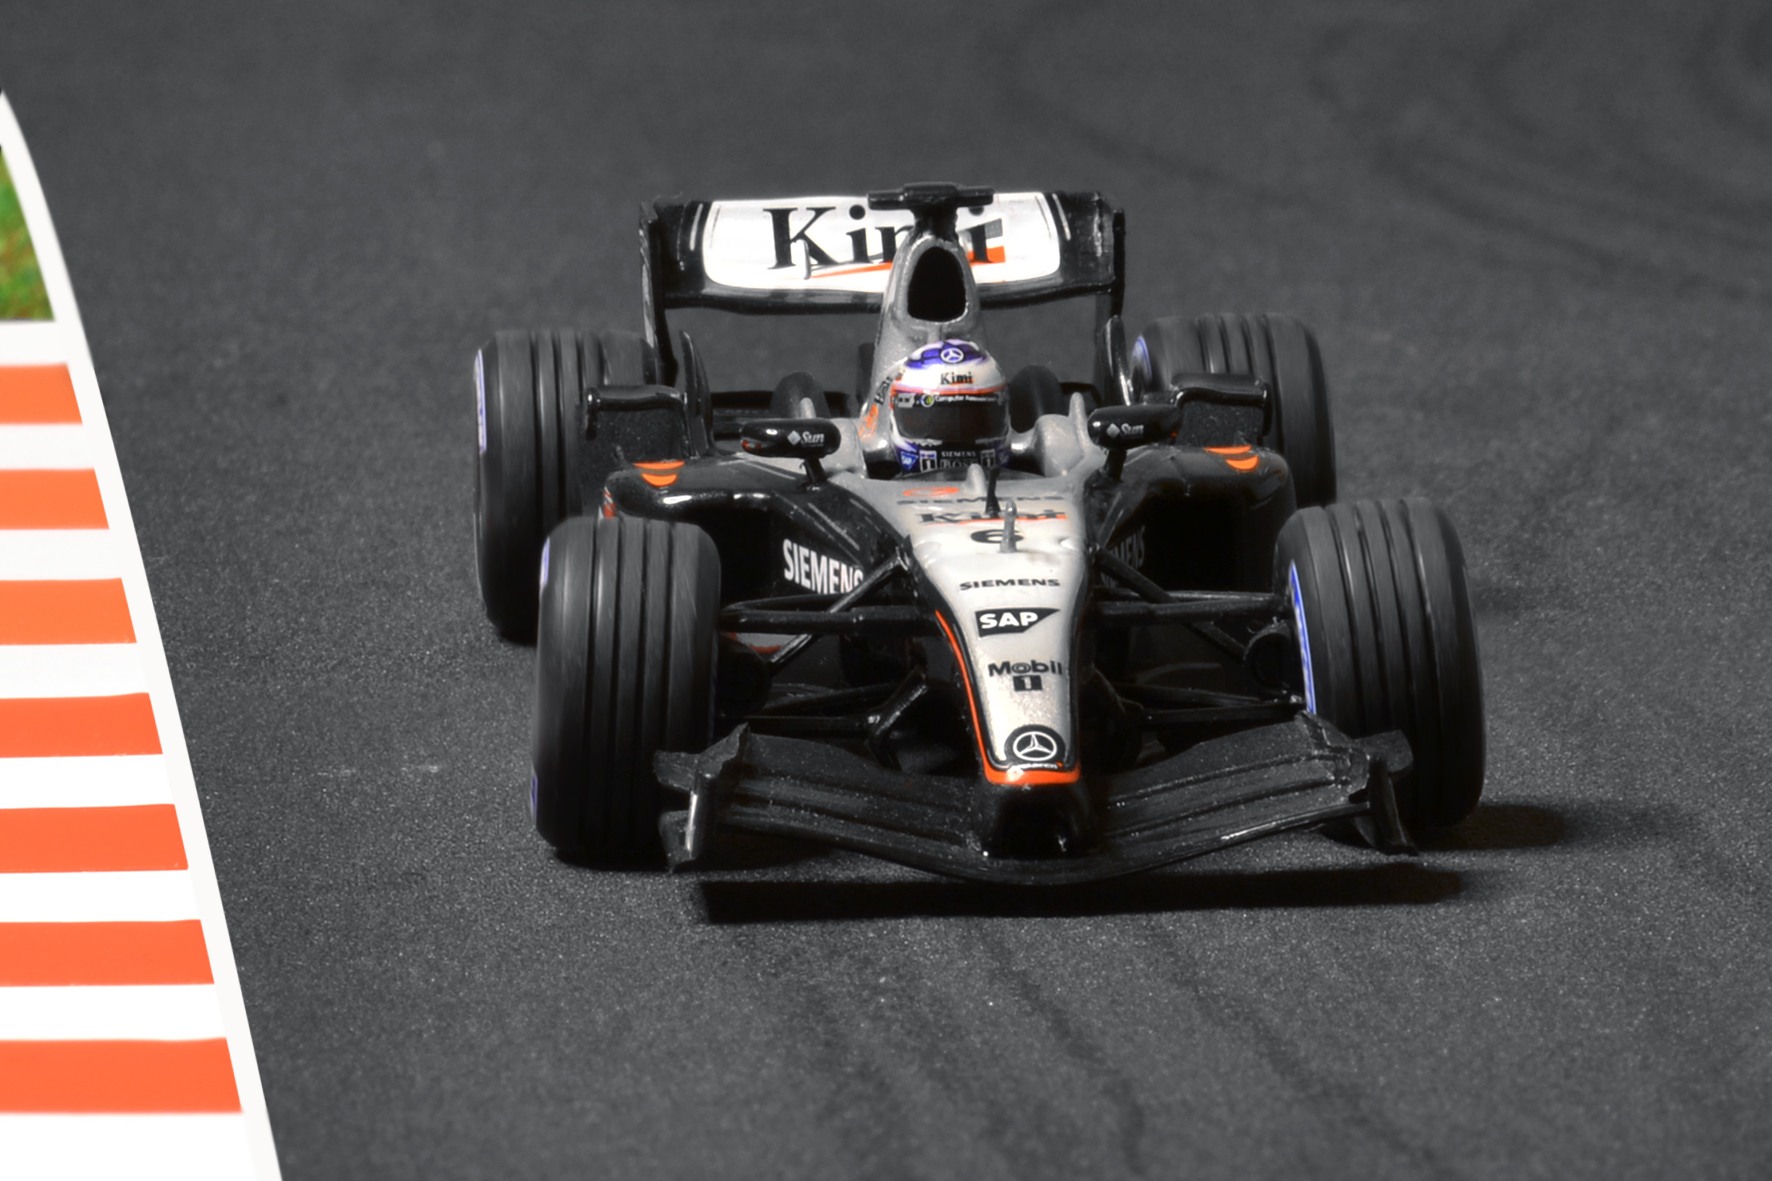 McLaren MP4-19 Kimi Räikkönen 2004 - Minichamps 1:43